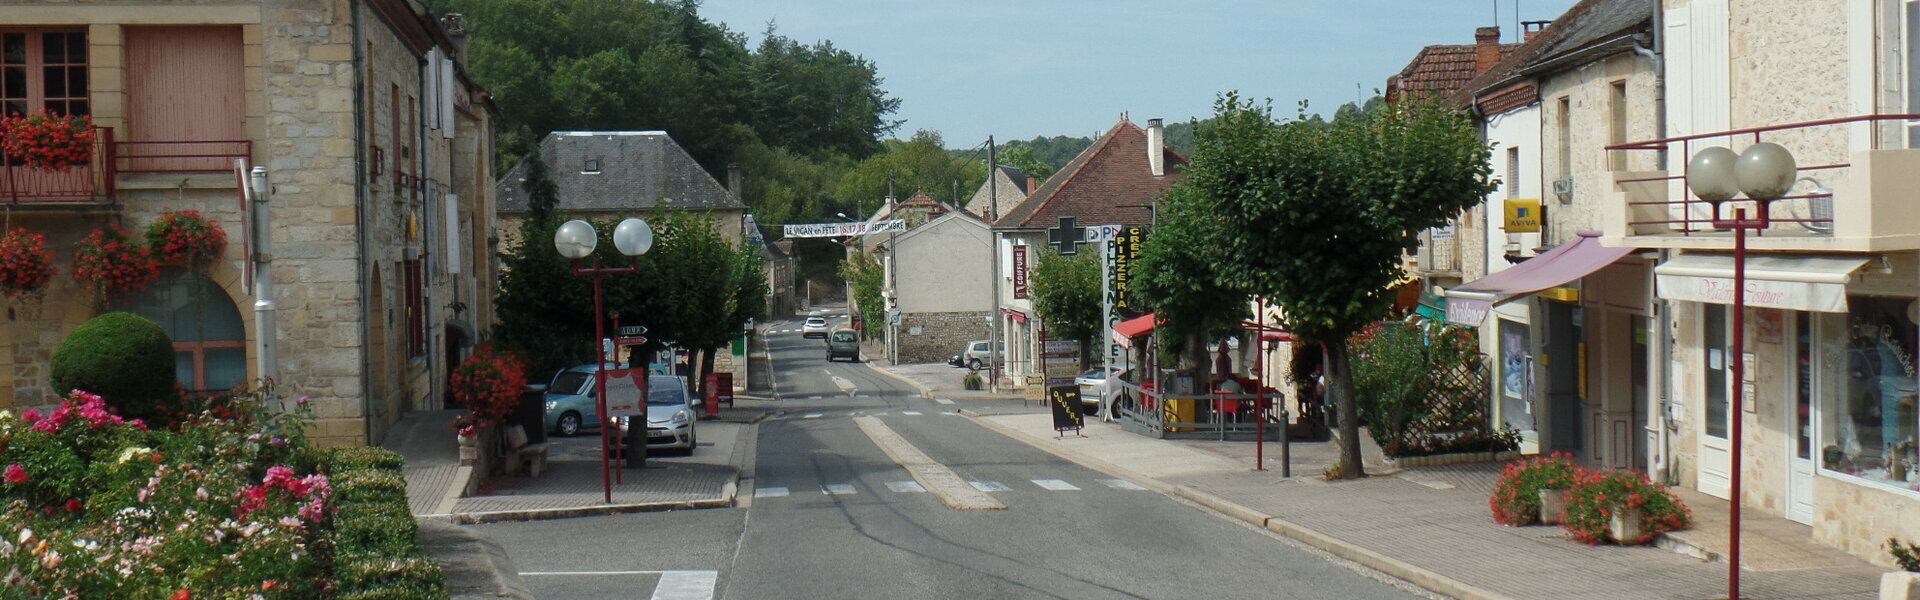 Mairie Commune Municipal Le Vigan Lot Occitanie